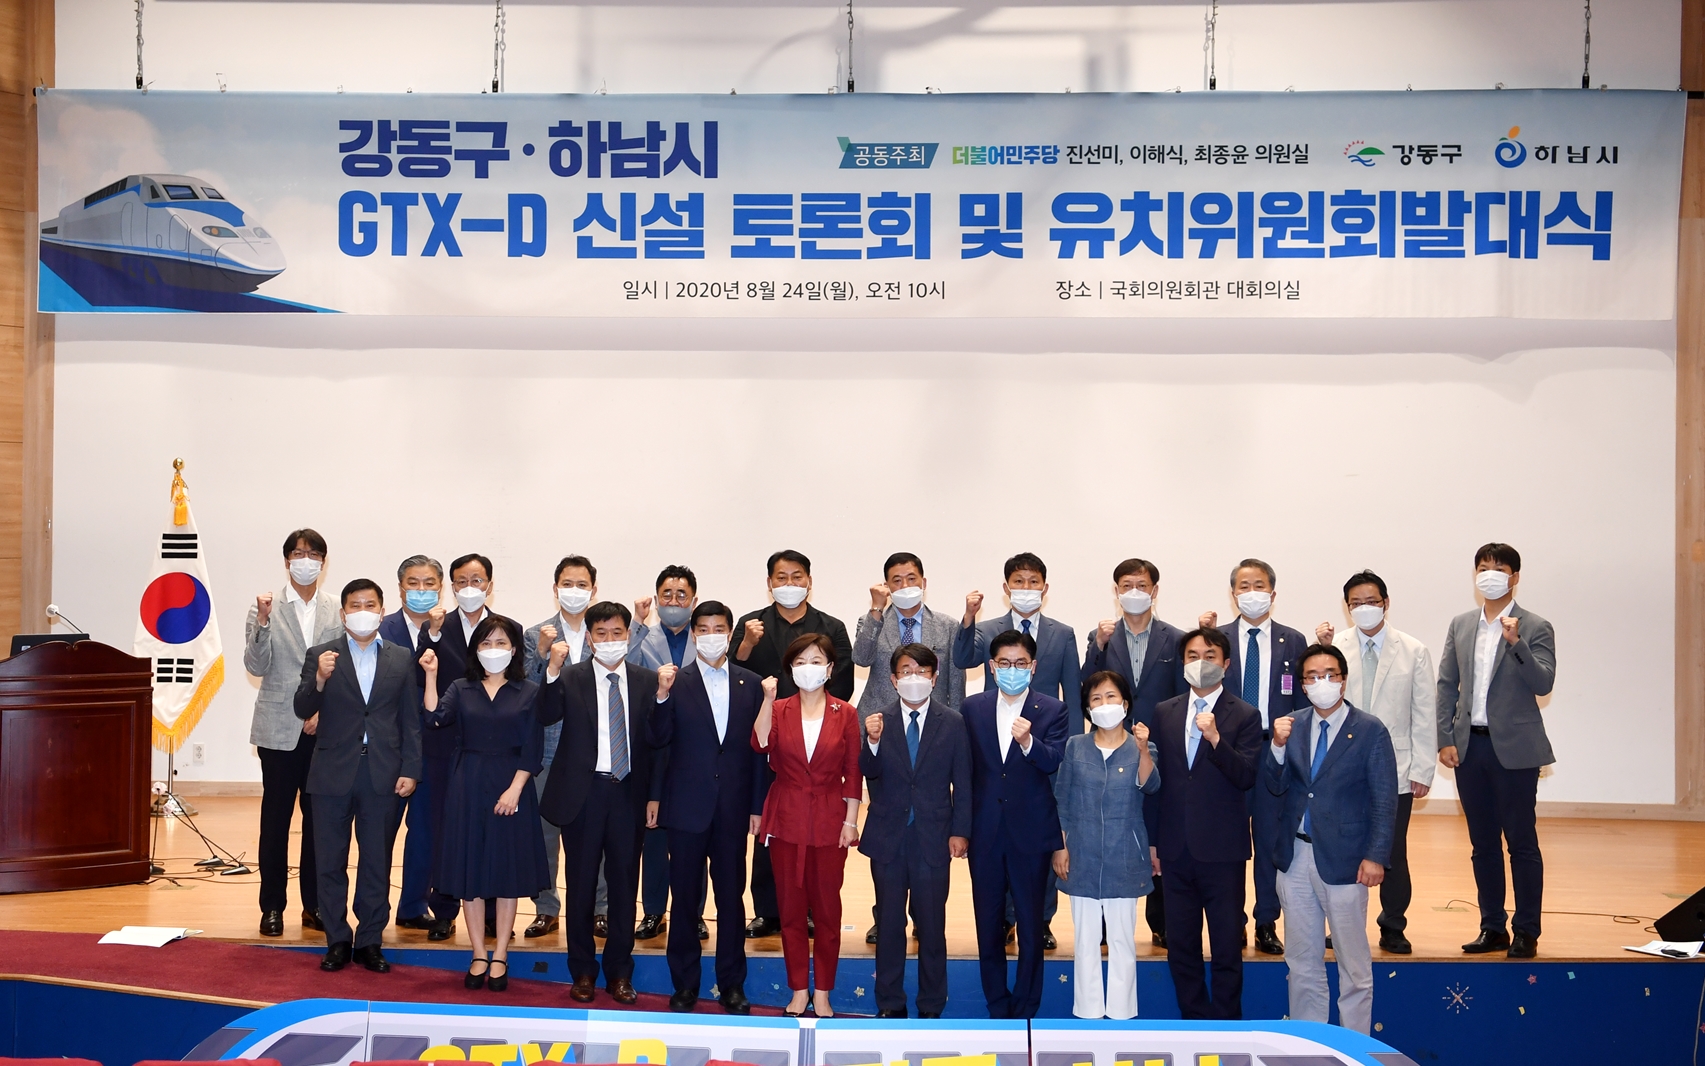 김상호 하남시장, ‘GTX-D 노선 신설’ 강동구와 협력해 나갈 것